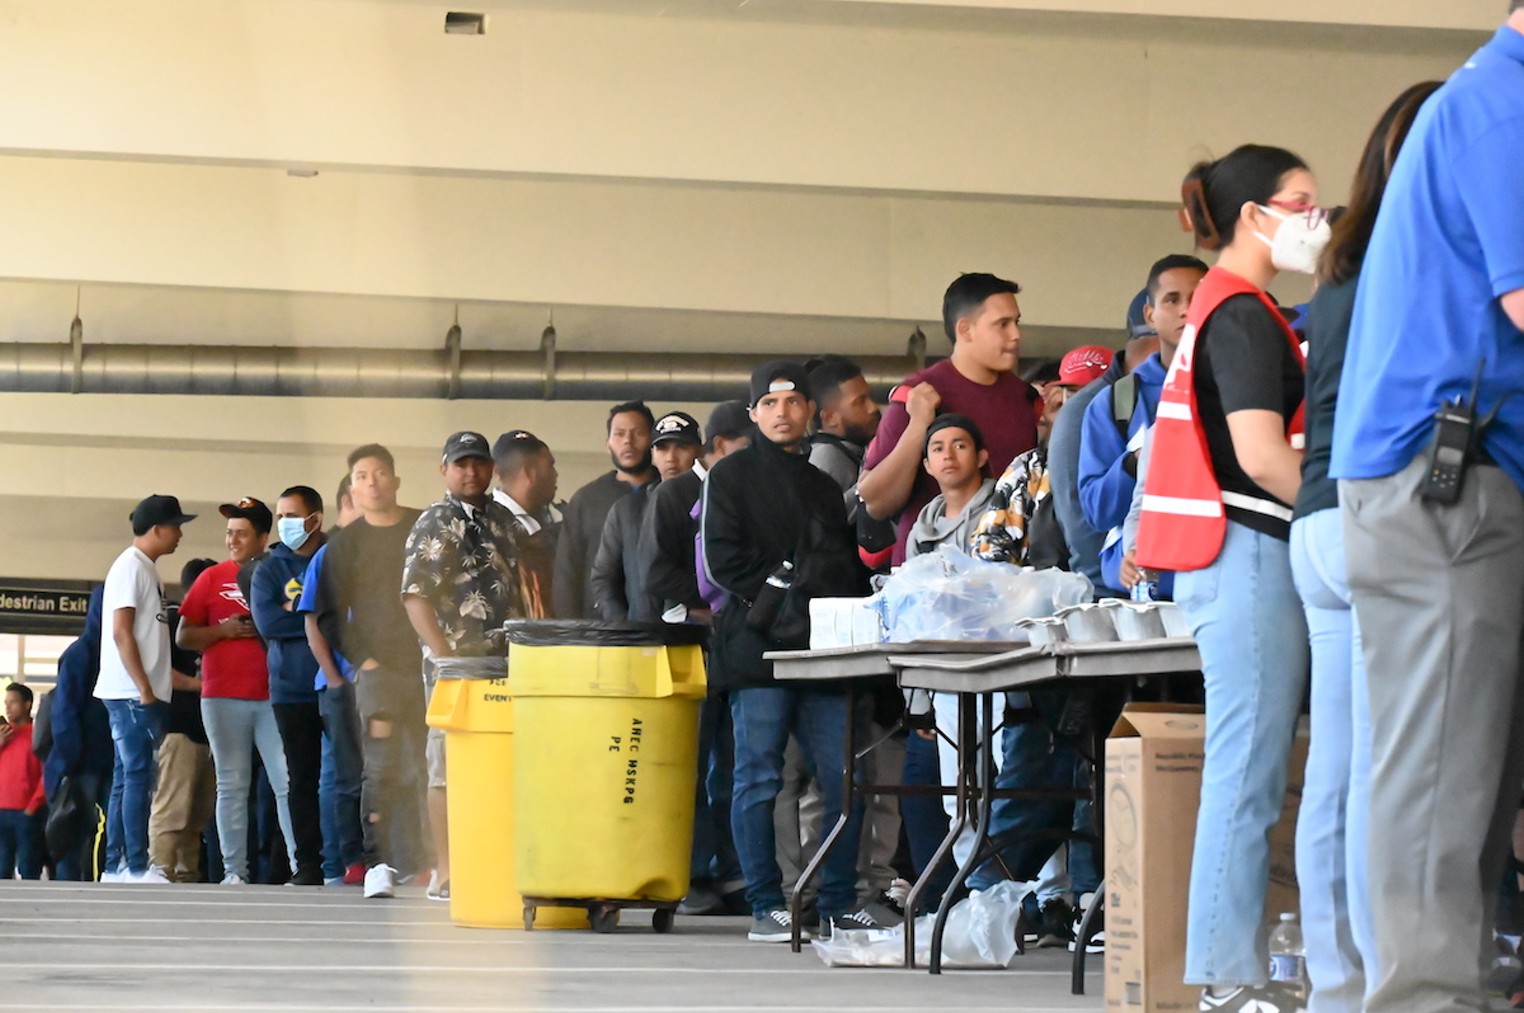 Los migrantes convierten el garaje en el campus Auraria de Denver en un refugio improvisado mientras esperan el procesamiento